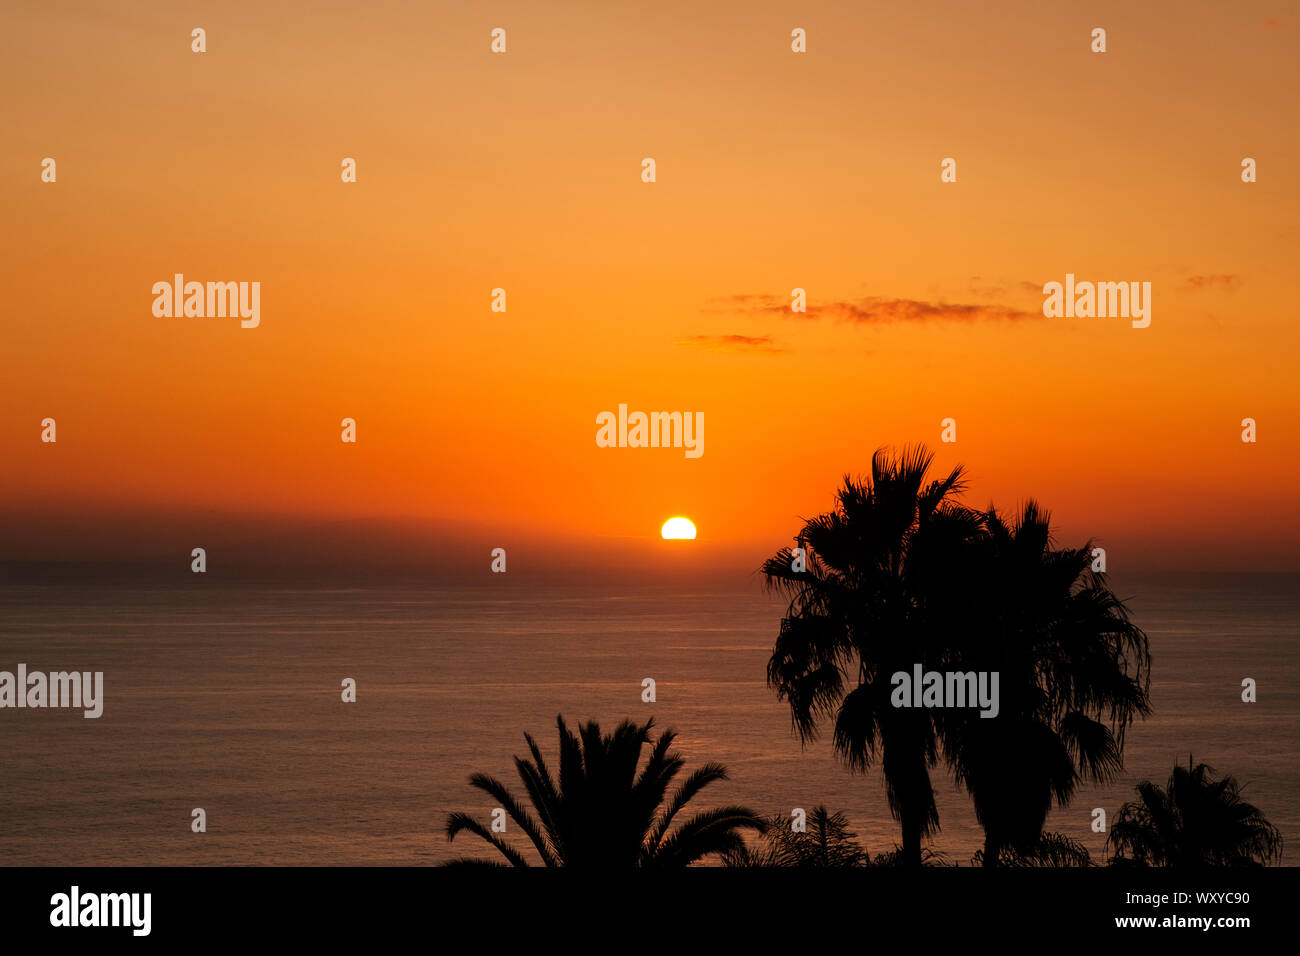 Einen malerischen Sonnenuntergang Himmel mit Blick auf das Meer im Hintergrund und Palm Tree Silhouette Stockfoto